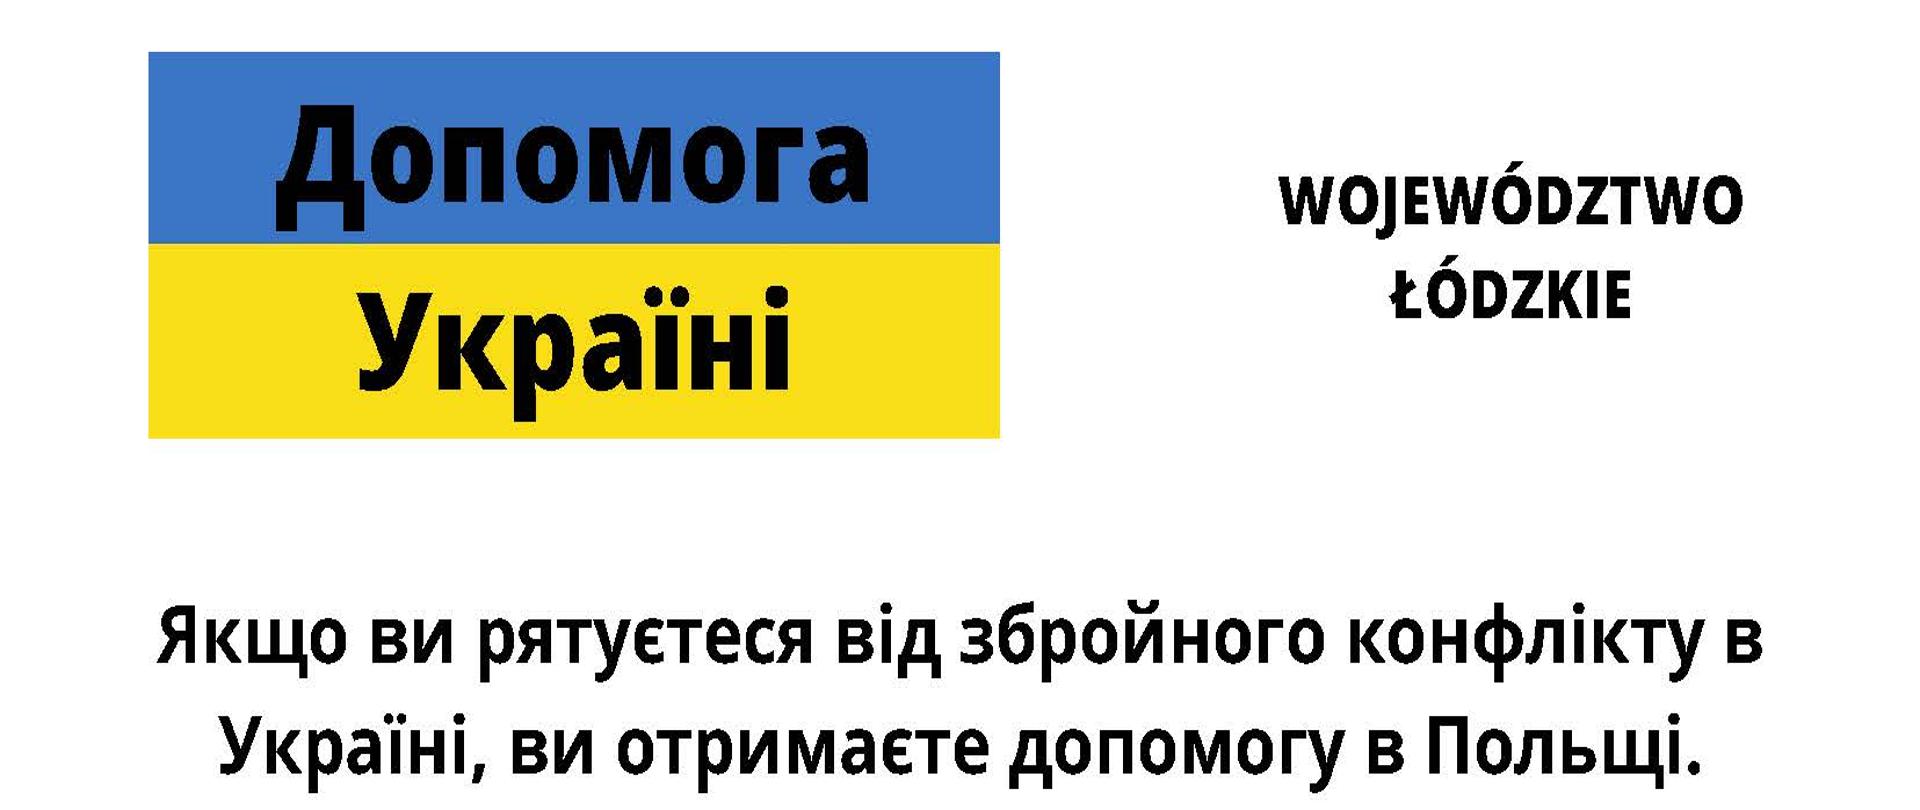 zdjęcie przedstawia informacje w języku ukraińskim dla obywateli z Ukrainy potrzebujących pomocy